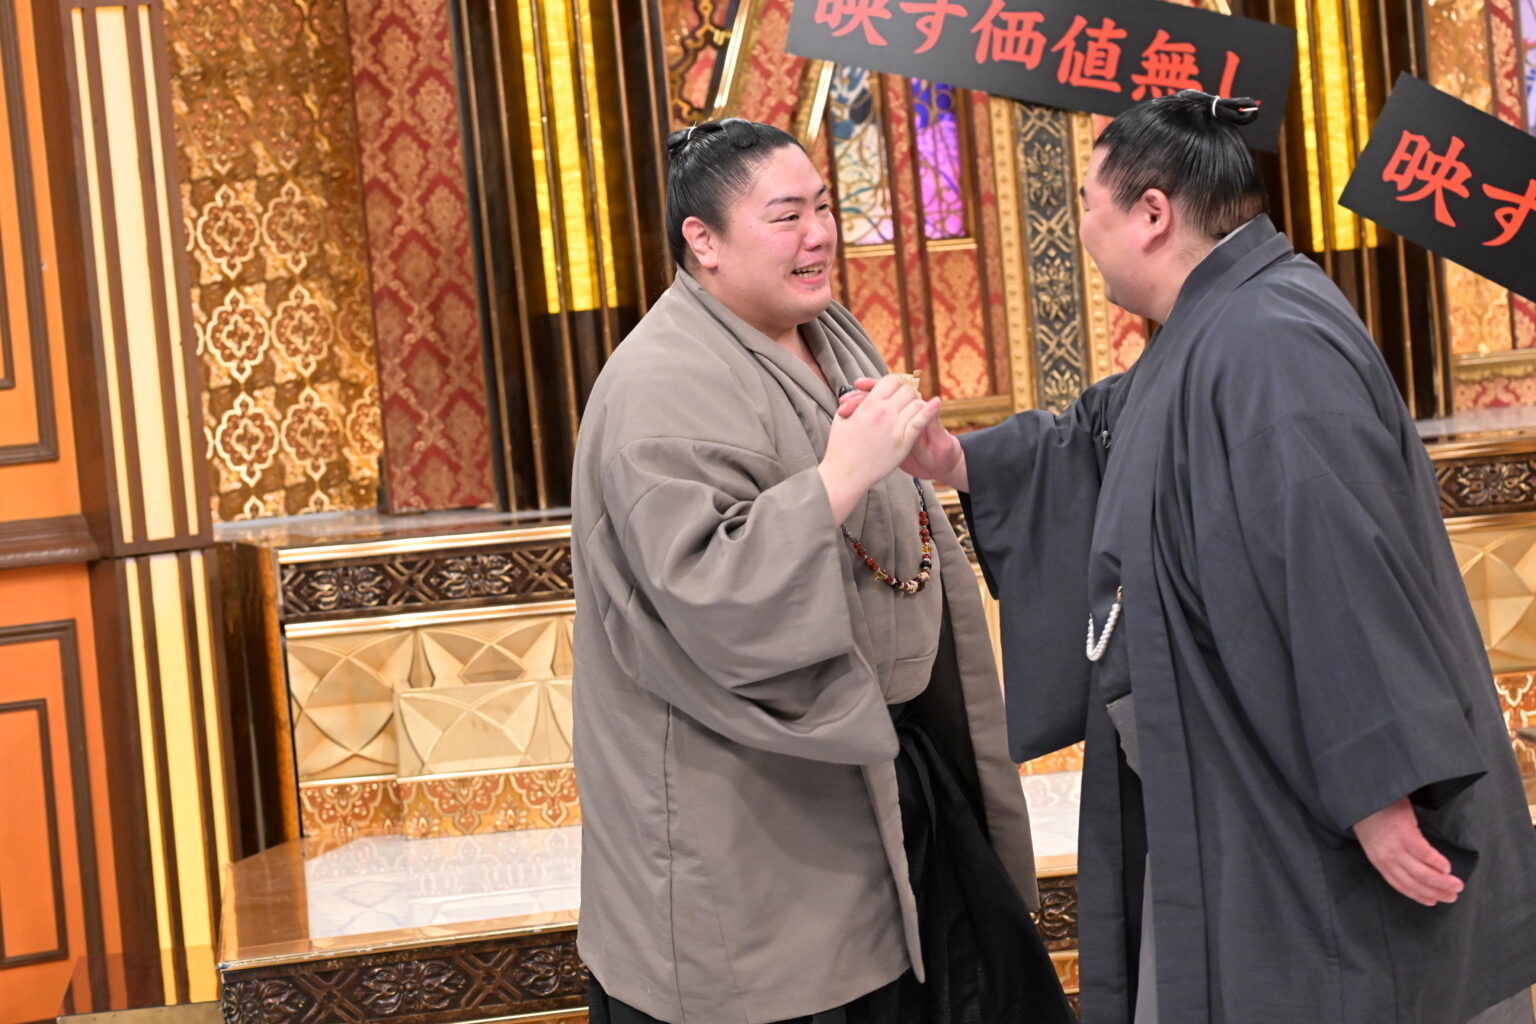 二人の相撲レスラーが和服を着て握手している。